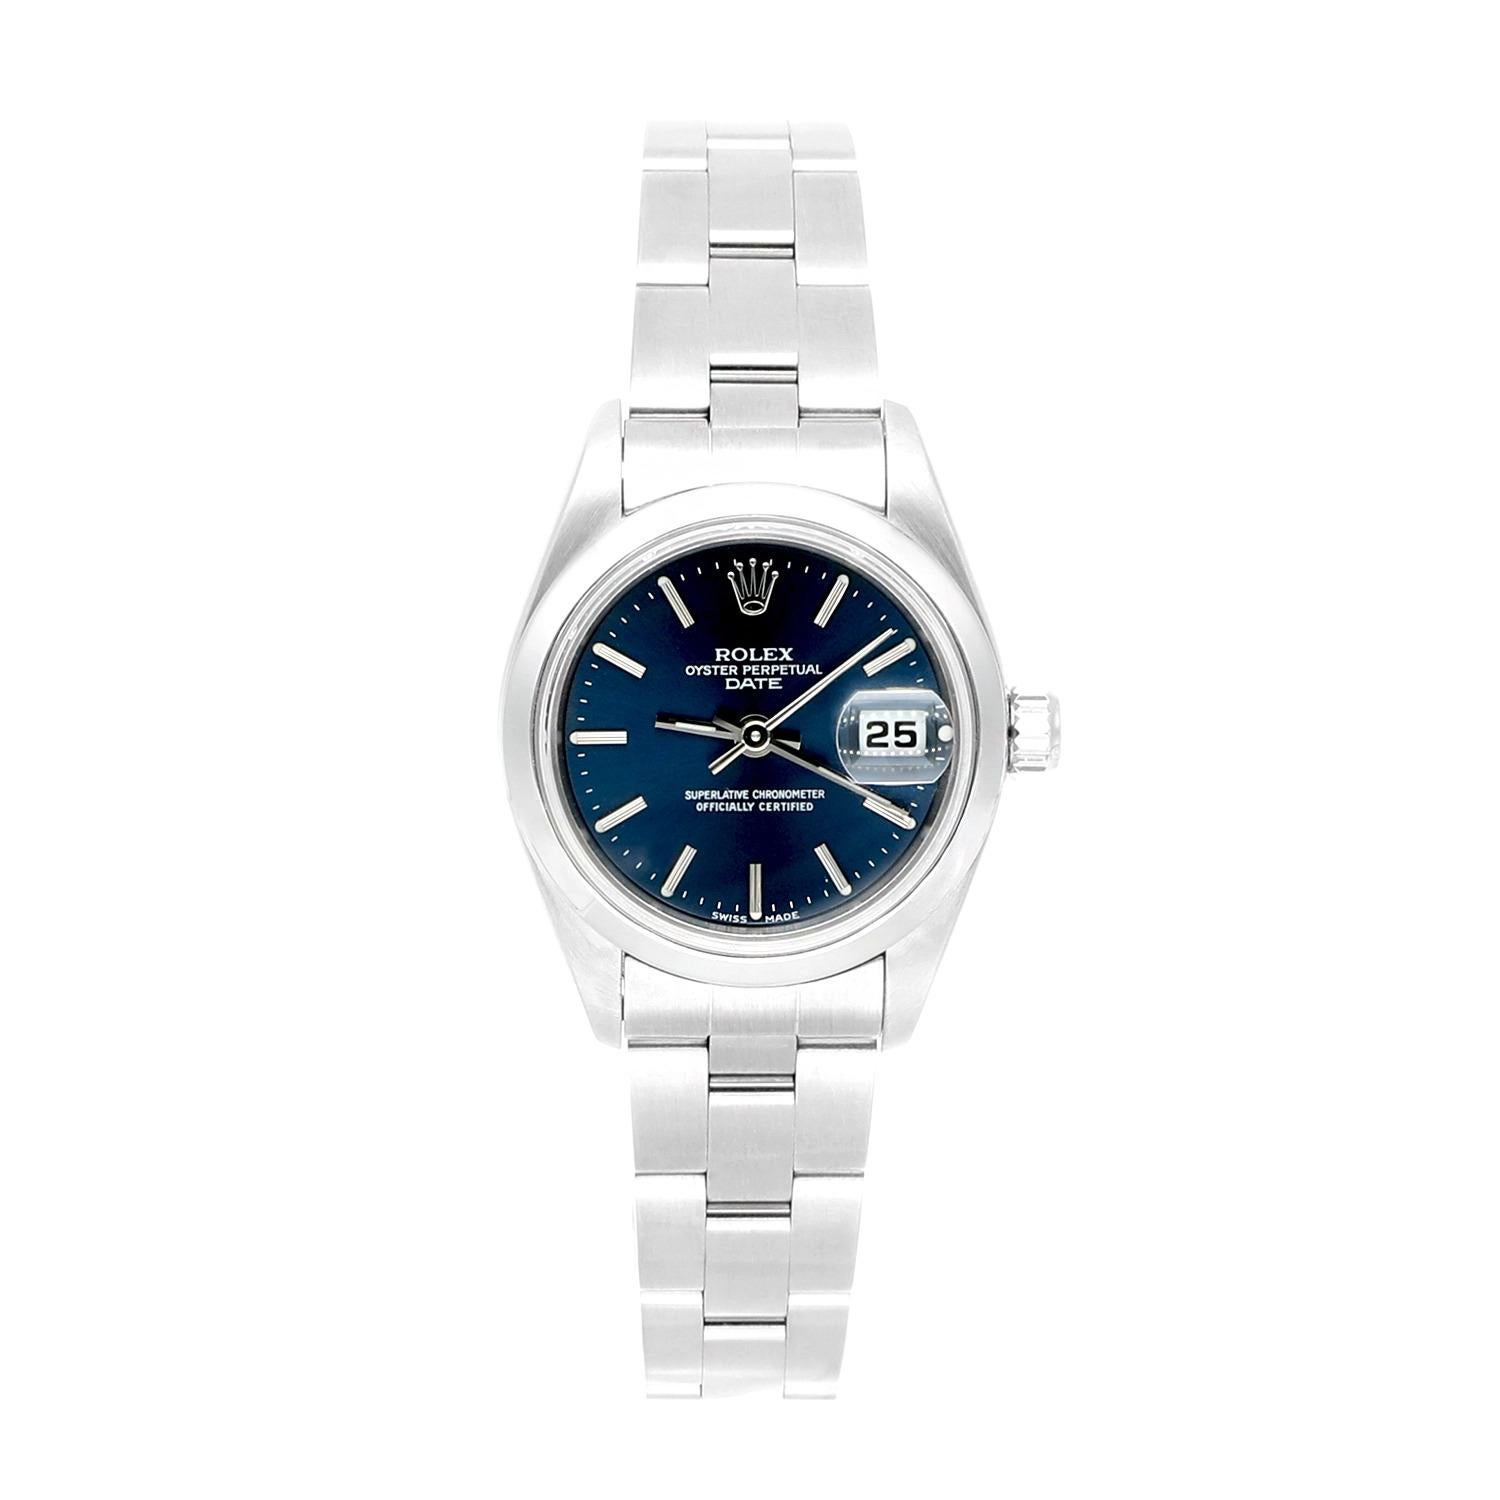 Montre pour dames Rolex Date cadran bleu bracelet Oyster en acier inoxydable 69160, Circa 1999.
Cette montre a été professionnellement polie, révisée et est en excellent état général. Il n'y a absolument aucune rayure ou imperfection visible.